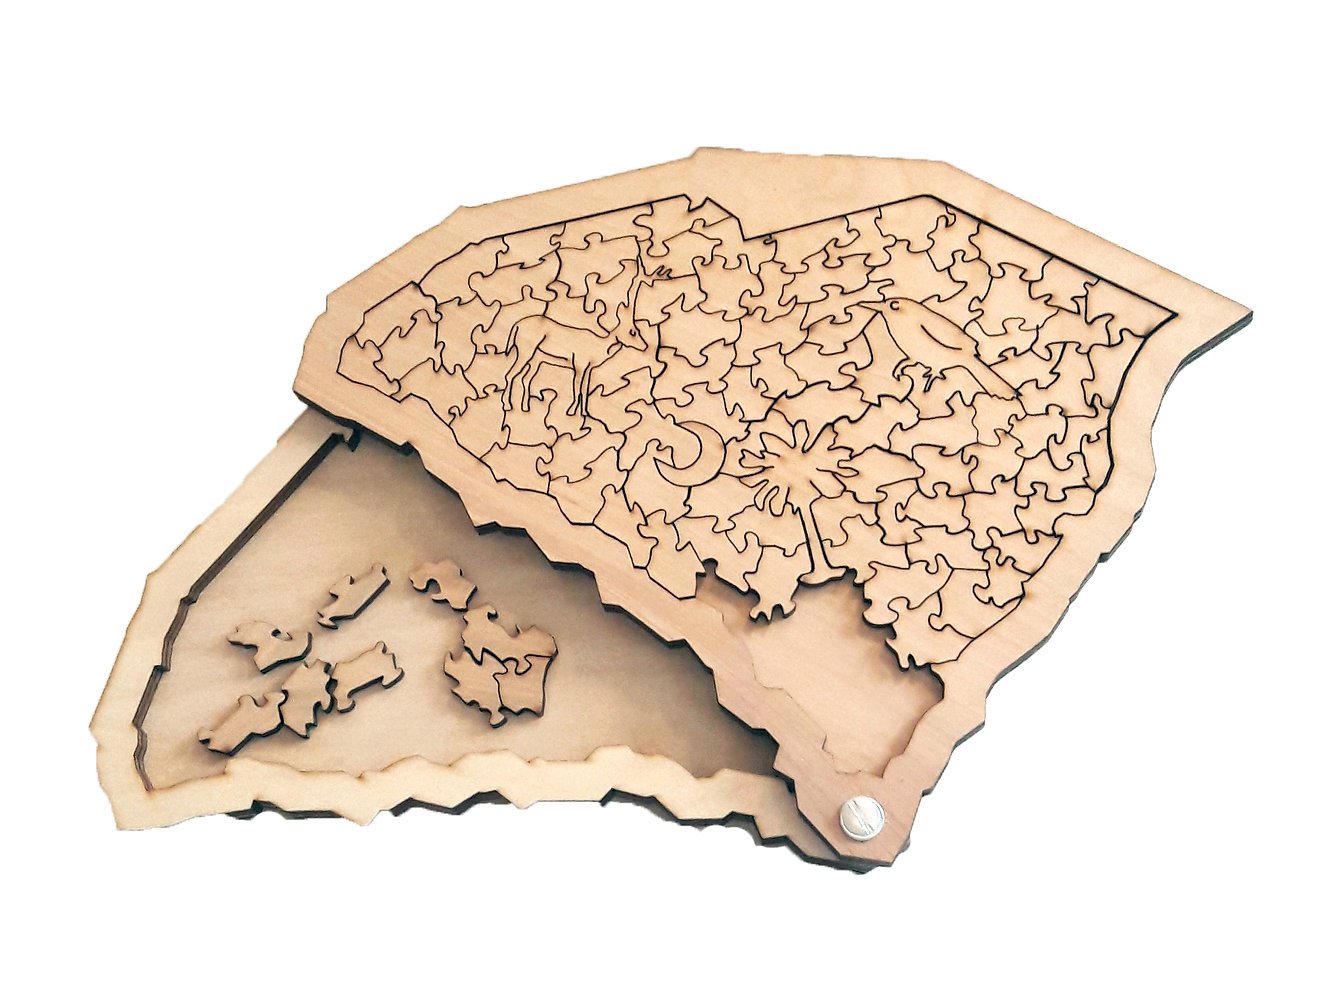 South+Carolina+Wooden+Jigsaw+Puzzle+at+Buy+Way+of+Charleston.jpg (1328×994)